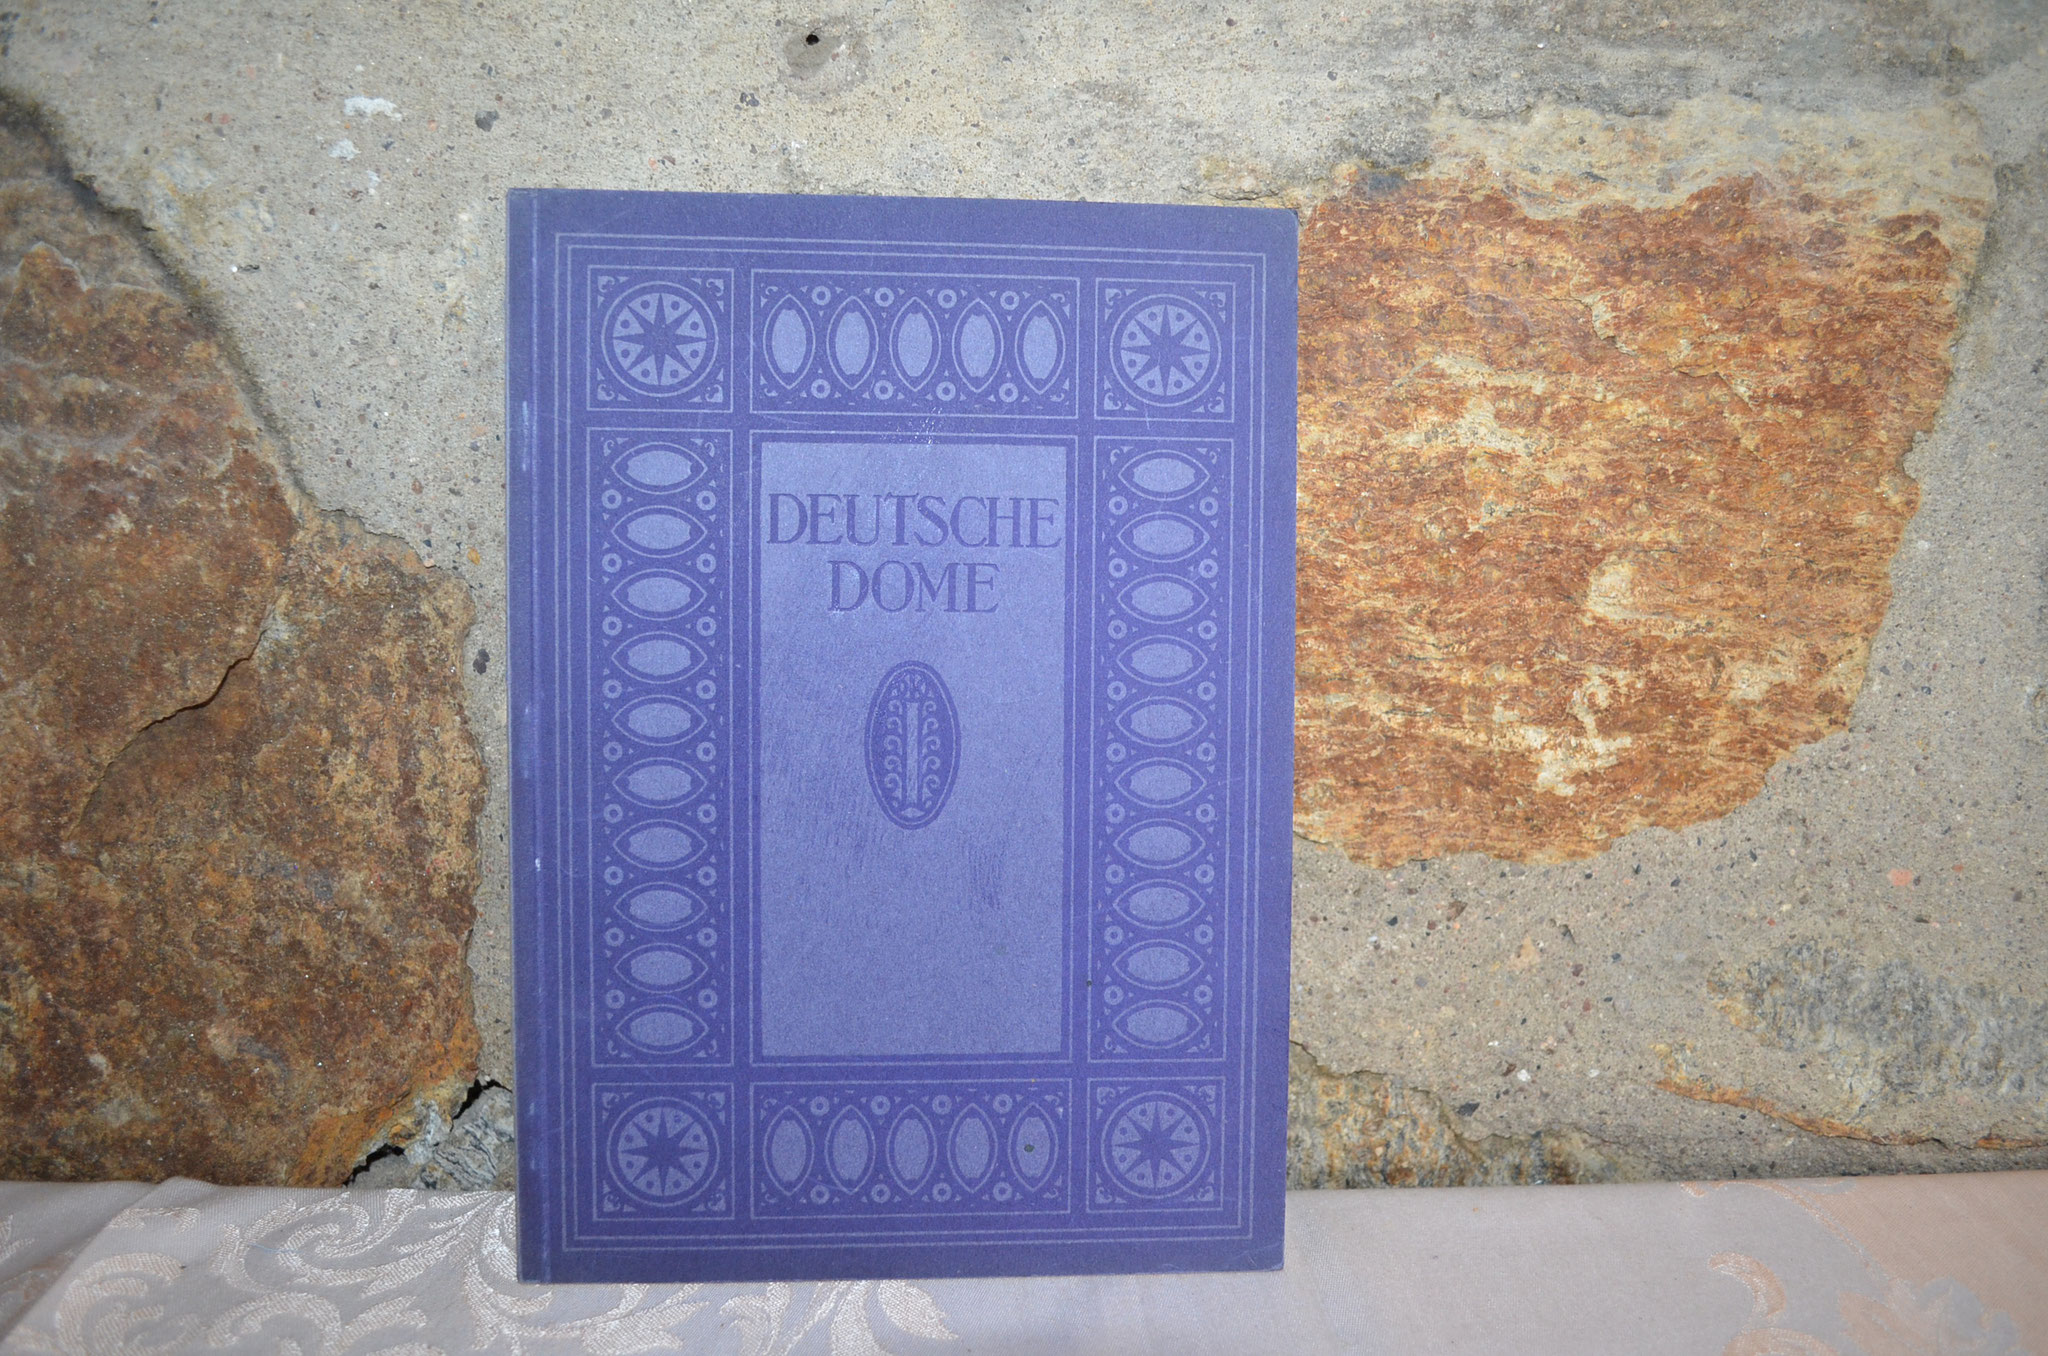 Buch mit 64 Seiten von 1924. Deutsche Dome im Mittelalter. Top Zustand. Preis: 3,90 €